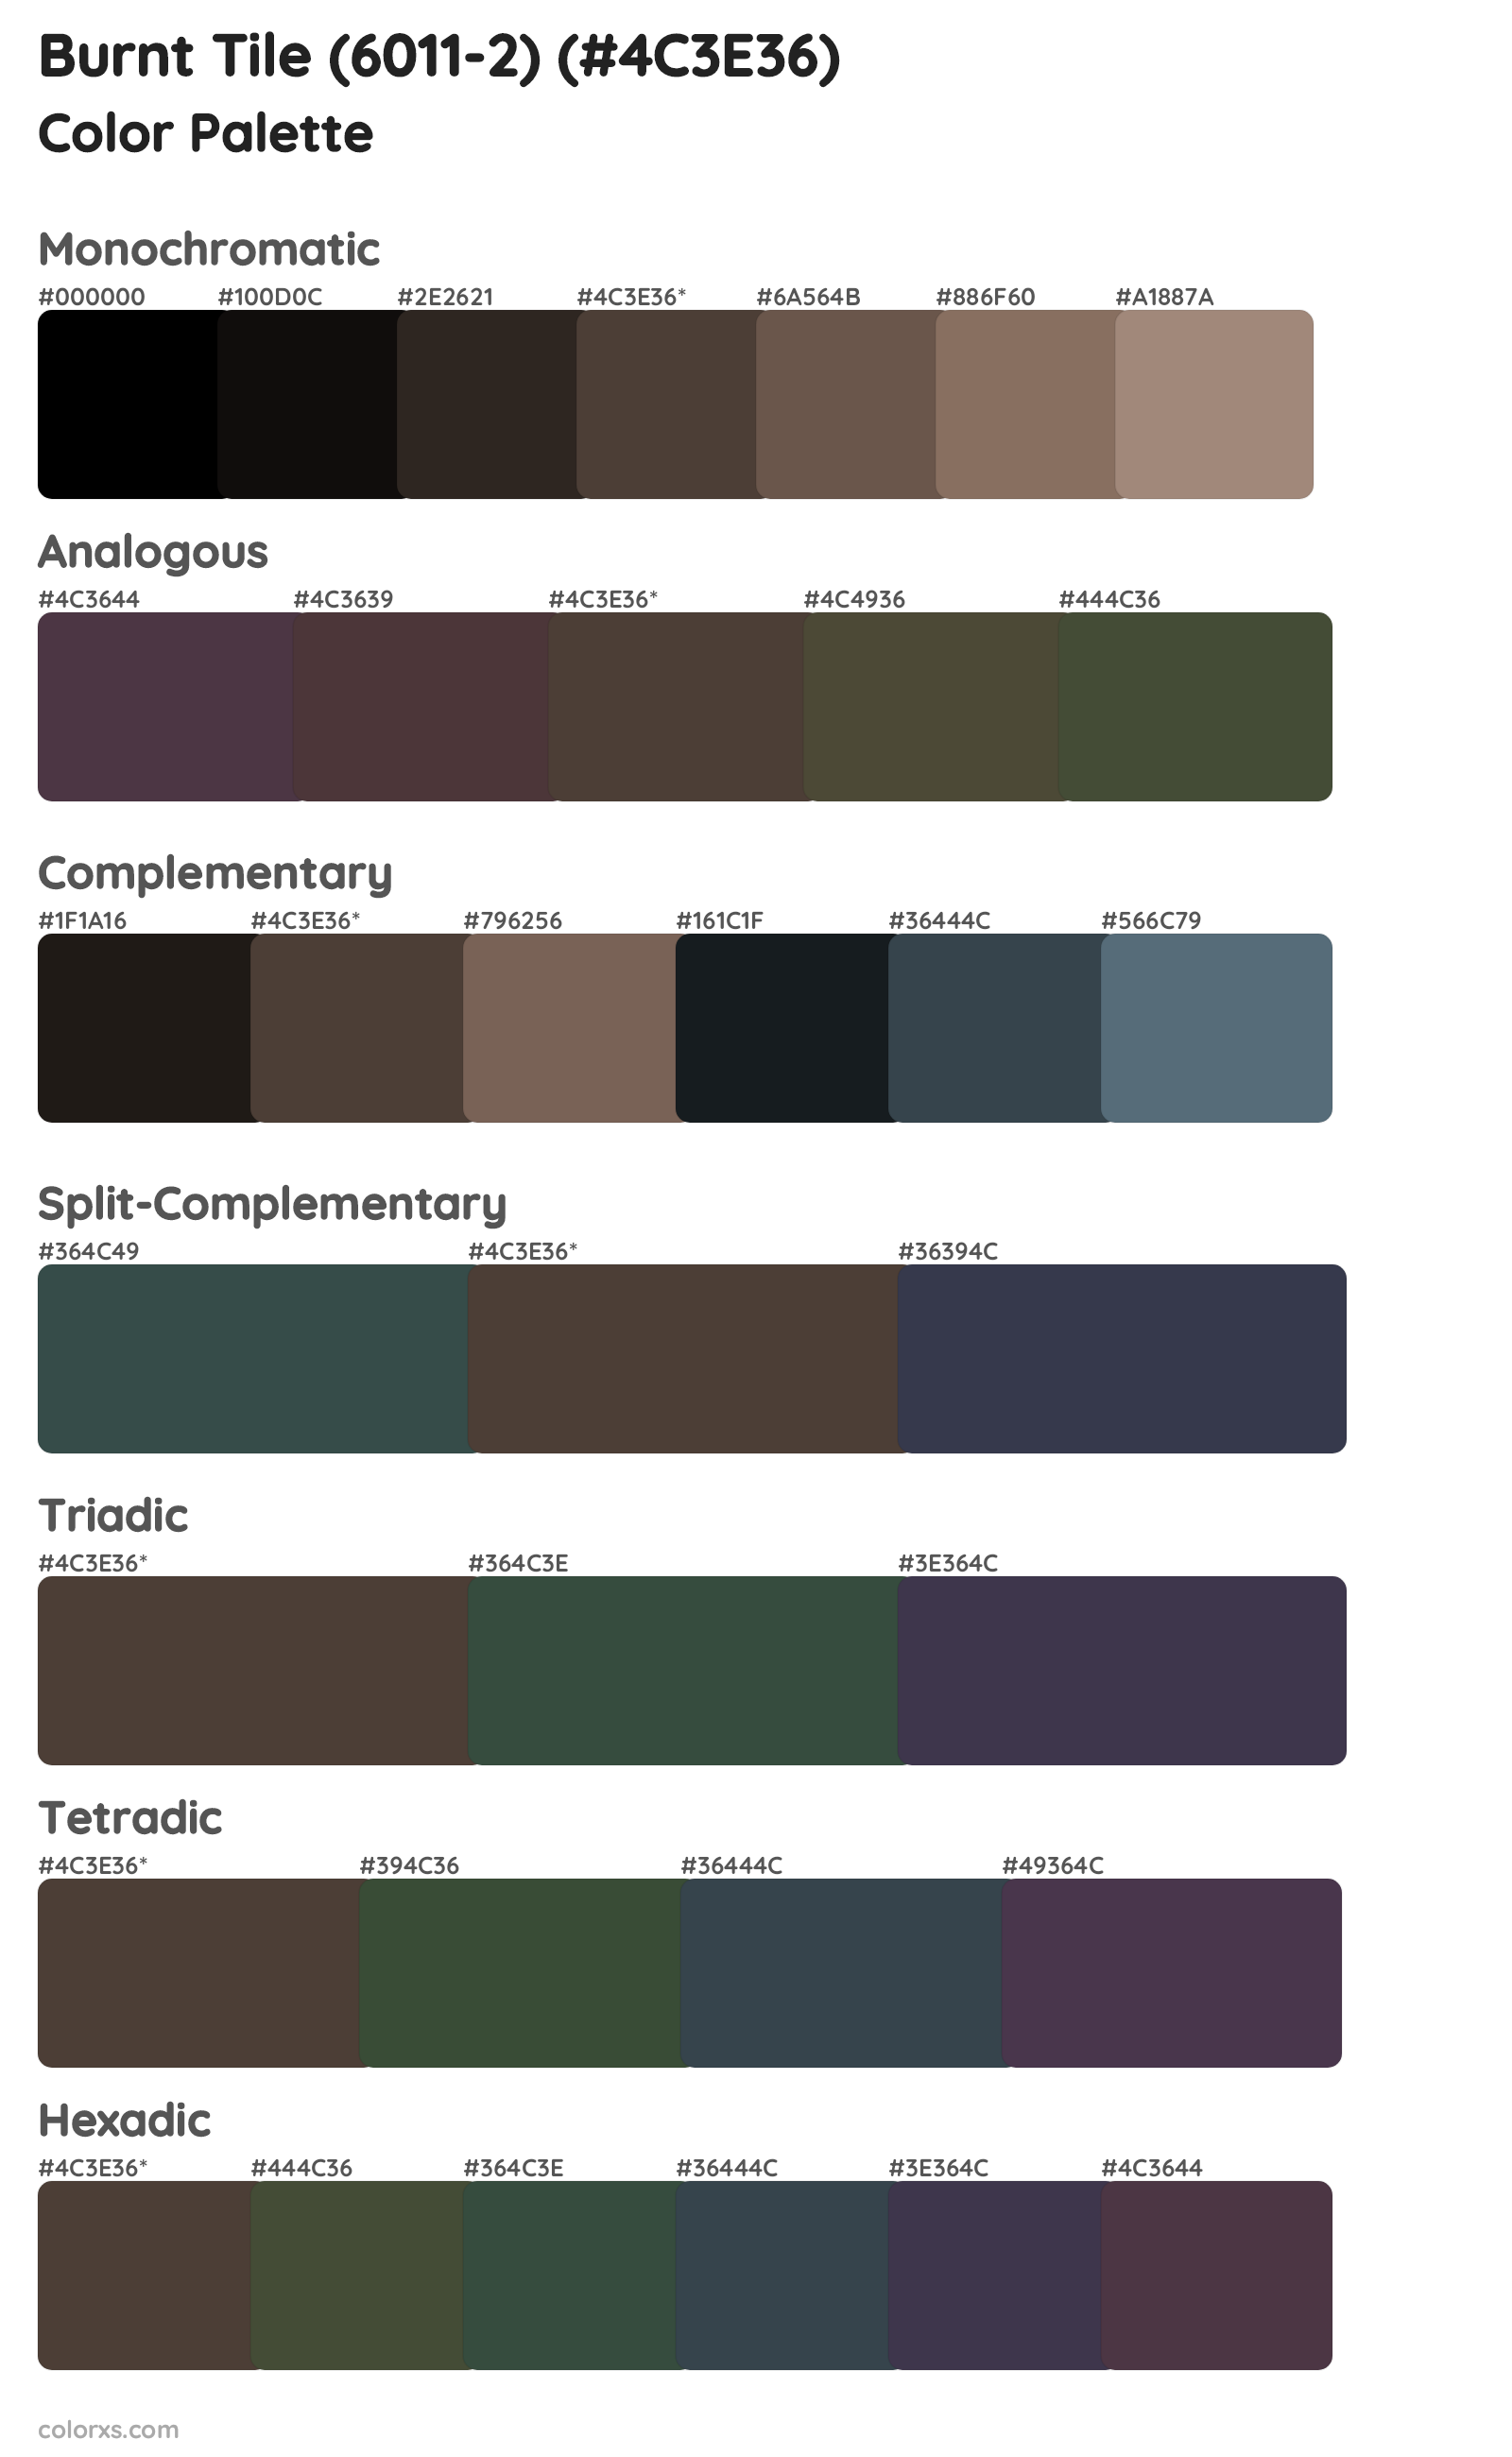 Burnt Tile (6011-2) Color Scheme Palettes